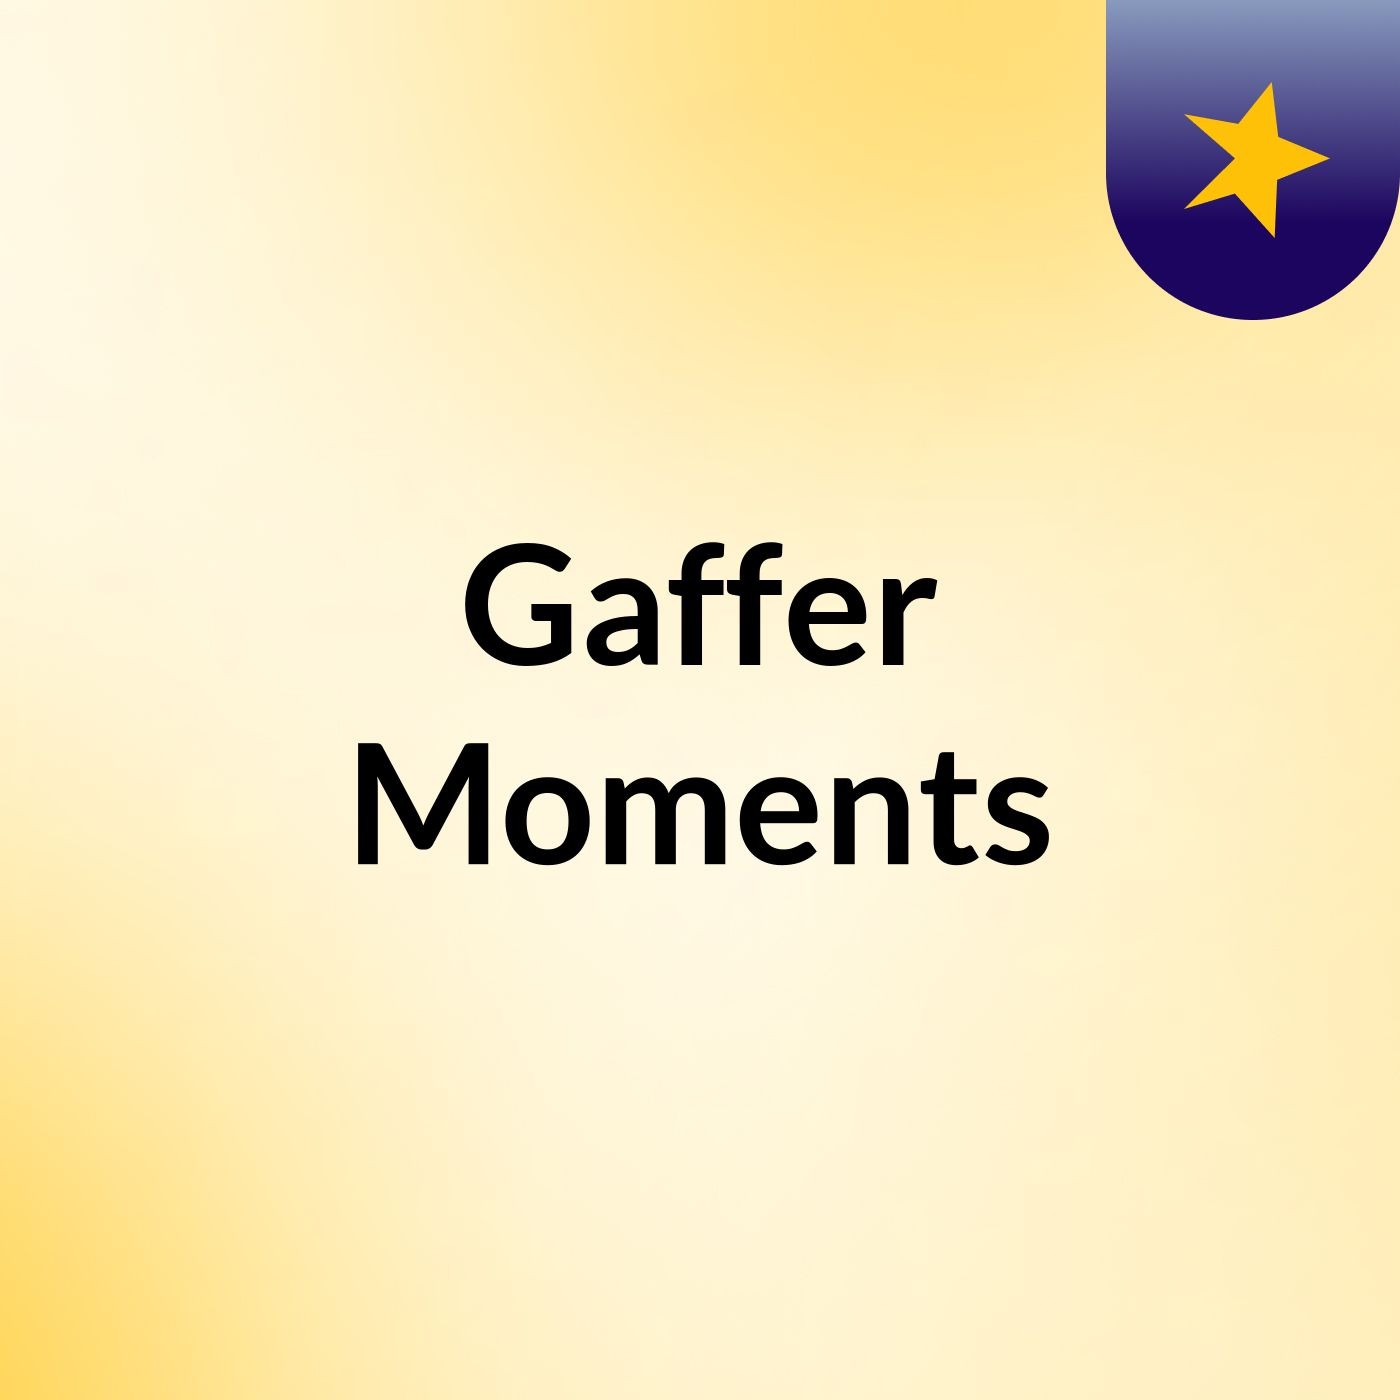 Episode 2 - Gaffer Moments